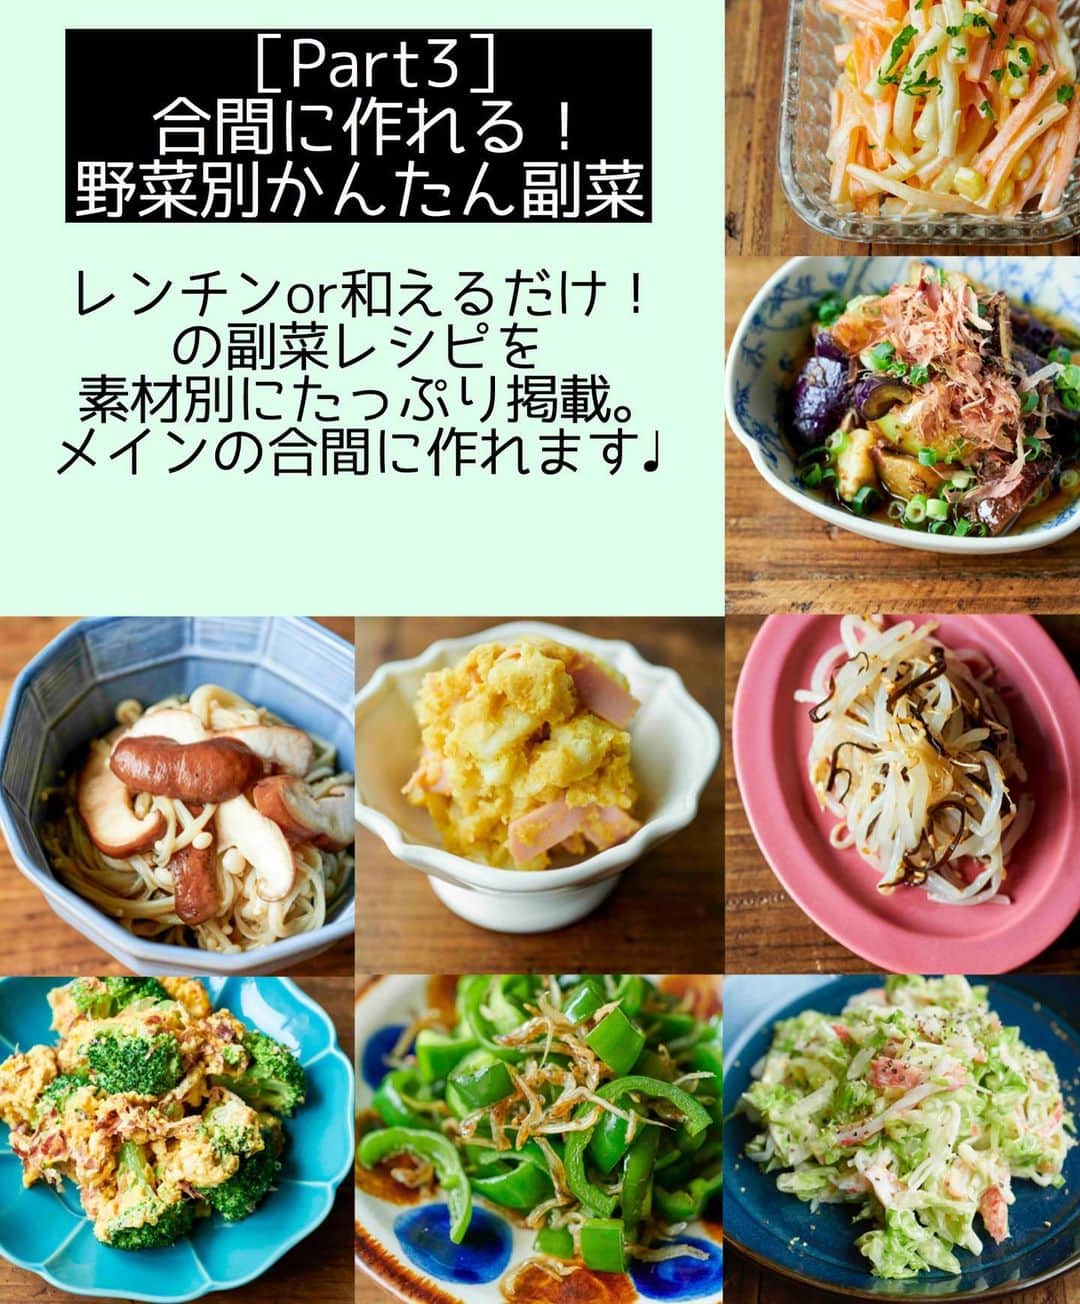 Mizuki【料理ブロガー・簡単レシピ】さんのインスタグラム写真 - (Mizuki【料理ブロガー・簡単レシピ】Instagram)「・﻿ 💓\\本日発売//💓﻿ ーーーーーーーーーーーーーーーーーーーーー﻿ 【15分でいただきます！#Mizukiの2品献立 】﻿ ーーーーーーーーーーーーーーーーーーーーー﻿ ﻿ ﻿ おはようございます(*^^*)﻿ ﻿ おかげさまで本日﻿ 新刊が発売となりました❣️﻿ (全国の書店さん&ネット書店さん)﻿ ﻿ ﻿ この本を作っている時は﻿ 自粛期間や移動制限があったりと﻿ 難しいことも多々ありましたが﻿ たくさんの方のご協力を得て﻿ 無事この日を迎えられたことを﻿ 心から有難く思います(涙)﻿ ﻿ この間に''おうち時間''という言葉も﻿ すっかり当たり前のようになり﻿ =おうちごはん　も増えましたね。﻿ ﻿ その間には﻿ 皆さんのお声をたくさんお聞かせいただき﻿ この本のテーマを絞り込みました。﻿ ﻿ ﻿ ﻿ ＿＿＿＿＿＿＿＿＿＿＿﻿ \15分でいただきます/﻿ #Mizukiの2品献立 ﻿ ￣￣￣￣￣￣￣￣￣￣￣﻿ ﻿ そう、初の献立本です！﻿ 以前アンケートで伺ったところ﻿ ''料理の一番の悩みは献立を考えること''﻿ という結果になりました。﻿ 更には作り置きはしない派が8割を超え﻿ 調理時間は約40分が最も多い結果に！﻿ ﻿ 食卓を完成させるまでに﻿ 私達は多くのプロセスを踏んでいます。﻿ 何を作ろうかと考えることはもちろん﻿ 買い物に行く、選ぶ、準備をする、﻿ 作る、片付ける•••。﻿ これを365日、しかも一日一回ではないわけで﻿ 更には仕事や育児をしながらですよ？﻿ ﻿ もうね、正直言って﻿ 私たちは忙しいんです😭😭‼️﻿ ﻿ ﻿ ﻿ ﻿ ﻿ ということで、﻿ \\しんどくない献立、考えました//﻿ ￣￣￣￣￣￣￣￣￣￣￣￣￣￣￣￣﻿ ﻿ メインはフライパン﻿ 副菜はレンジ(又は和えるだけ)の2品献立！﻿ ﻿ メインを作っている合間にできる﻿ レンチン副菜を組み合わせることで﻿ 15分で2品が同時に完成します！﻿ ﻿ コンロを塞がない﻿ 調理道具と洗い物は最小限に押さえた﻿ 簡単・時短・節約レシピ。﻿ ﻿ 忙しい私たちには﻿ 2品くらいがちょうどいい(*´艸`)💕﻿ (別腹デザートも掲載🍮)﻿ ﻿ ﻿ ﻿ ﻿ 【contents】﻿ ーーーーーPART.1 ーーーーーー﻿ 【Mizukiのお墨つき！２品献立ベスト10】﻿ 約15分でできる10献立をご紹介！﻿ メインは全部フライパン、副菜はレンチンor混ぜるだけ♡﻿ ﻿ ーーーーーPART.2 ーーーーーー﻿ 【フライパンひとつ！今夜のメインおかず】﻿ 献立の主役になる肉や魚のおかず50品！﻿ Part3の副菜と組み合わせれば﻿ 献立のバリエーションが広がりますよ♩﻿ それぞれの料理に合う副菜も選んでご案内！﻿ ﻿ ーーーーー PART.3 ーーーーー﻿ 【合間に作れる！ 野菜別かんたん副菜】﻿ レンチンor和えるだけの副菜レシピを﻿ 素材別にたっぷり収録♩﻿ ﻿ ーーーーー番外編ーーーーー﻿ 【ひとつで満足！ご飯＆麺】﻿ 丼やチャーハン、パスタに焼きそばなど、﻿ それだけで満足できる一皿メニューをご紹介♩﻿ ﻿ 【具だくさん！おかずスープ】﻿ これからの季節に役立つ具沢山のおかずスープ♩﻿ ﻿ 【オーブンいらずのおやつレシピ】﻿ ゼリーに寒天、クッキーにレアチーズなど﻿ どれもオーブン要らずのお手軽レシピ♩﻿ ーーーーーーーーーーーーーーーーーー﻿ ﻿ ﻿ ﻿ ﻿ ﻿ ﻿ またこうして本を作らせてもらえて﻿ 皆さんには感謝の気持ちでいっぱいです。﻿ 本当にありがとうございます（ ;  ; ）﻿ ﻿ 自炊する人が増えたり﻿ 食事を作る回数が増えた今﻿ 今日、すぐにでもお役に立てるものを﻿ 作りたいと思いましたm(_ _)m﻿ ﻿ 朝ごはんを作ったと思ったら﻿ もうお昼ごはんのことを考えて﻿ お昼ごはんを食べたらまた﻿ 晩ごはんのことを考える。﻿ ﻿ そんな風に食事と向き合う機会でき﻿ 改めてその大変さ、そして難しさを体感し﻿ リアルな立場で考えました。﻿ ﻿ 一汁三菜作れたらもちろんいいし﻿ それに越したことはないと思います。﻿ でも実際生活スタイルが変わっているのだから﻿ 私たちも変わっていいんじゃないかと。﻿ ﻿ それは決して難しい話しではなく﻿ 食事は心とお腹を満たすものだと﻿ シンプルに考えるだけでいいのです。﻿ ﻿ 毎日の食事作りは﻿ 無理せず、頑張り過ぎず、ほどほどに﻿ 上手にやりくりしましょうね☺️💓﻿ ﻿ ﻿ ﻿ ﻿ ____________________________________________﻿ ＊【#Mizukiの2品献立 】をタグ付けしていただけると﻿ 必ずお伺いさせていただきます🥰﻿ 皆さんの作って下さったお料理を﻿ 是非拝見させて下さい☺️💓﻿ そしてどうぞお力添え下さい🤫㊙️😂💓﻿ ￣￣￣￣￣￣￣￣￣￣￣￣￣￣￣￣￣￣￣￣﻿ ﻿ ﻿ ﻿ #Mizukiの2品献立#料理本#レシピ本#マガジンハウス#発売#献立」9月24日 7時29分 - mizuki_31cafe